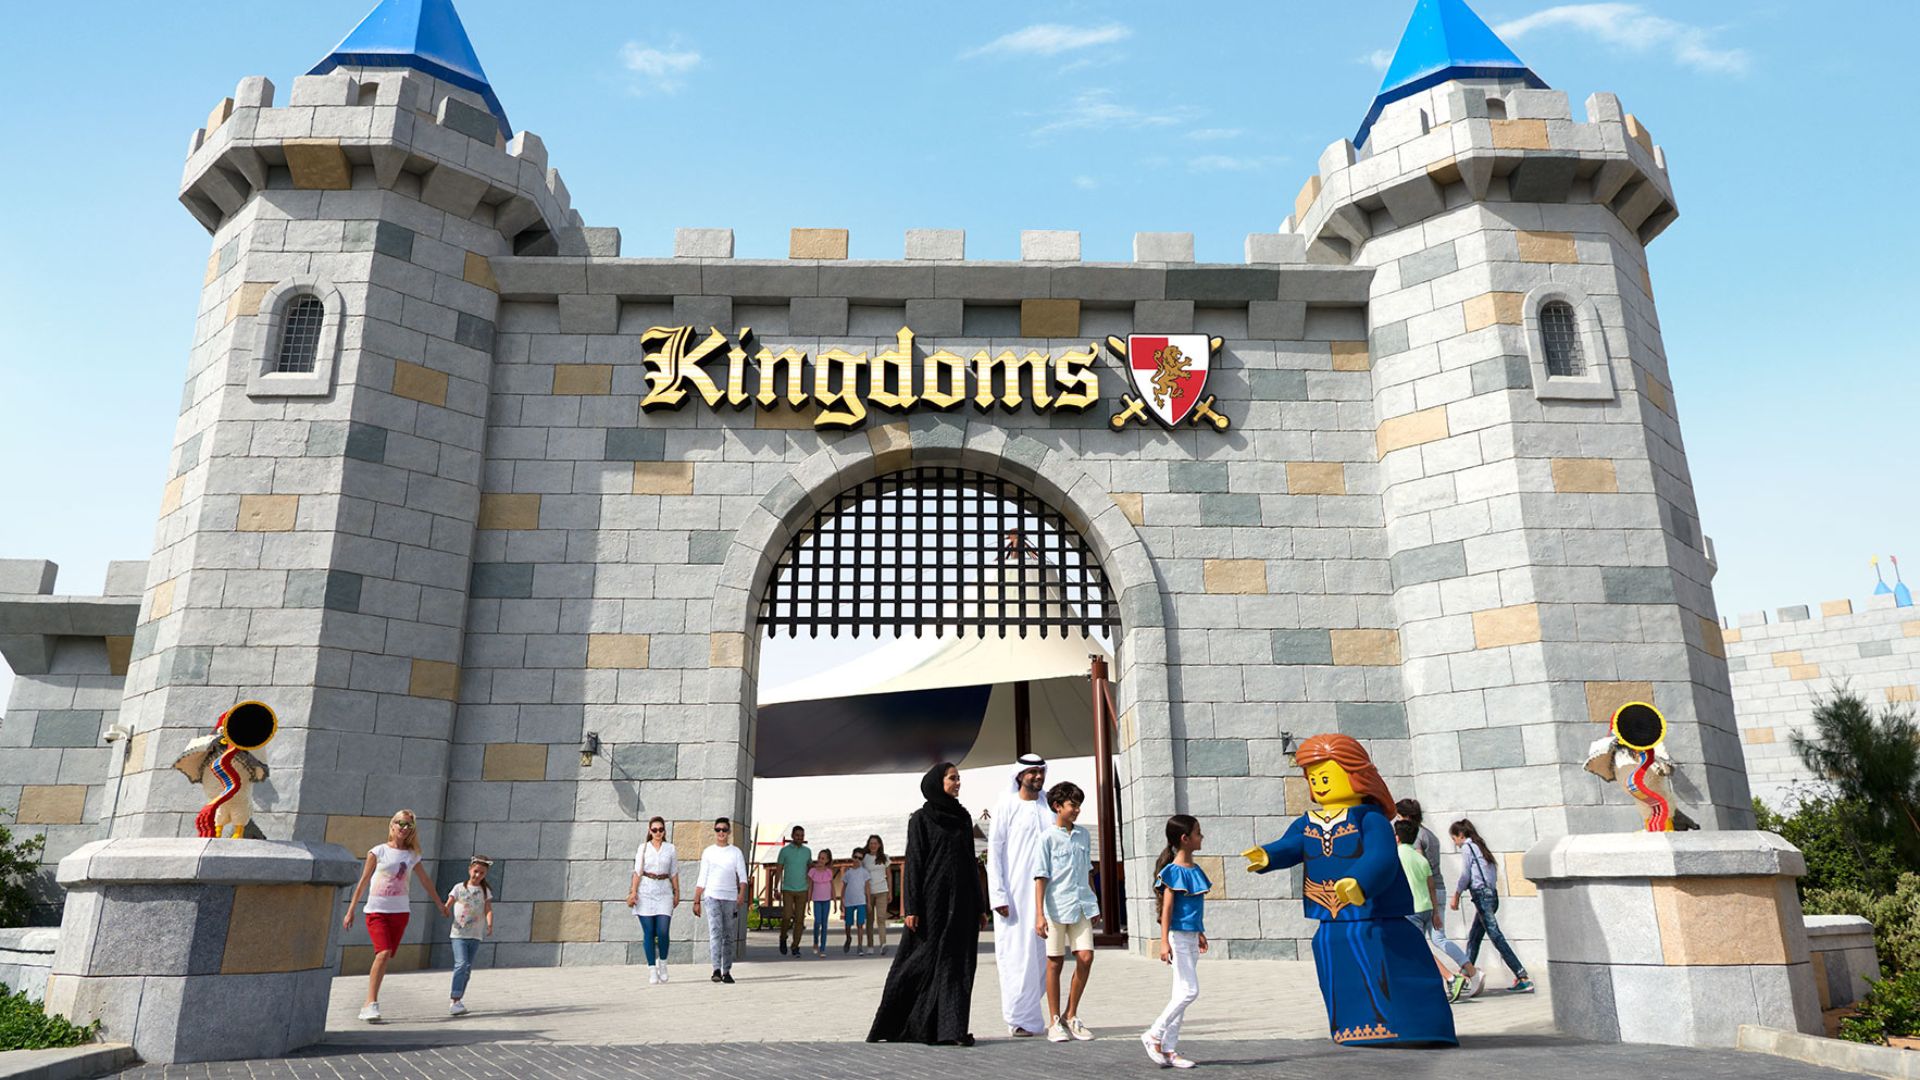 Kingdoms are entrance at Legoland Dubai